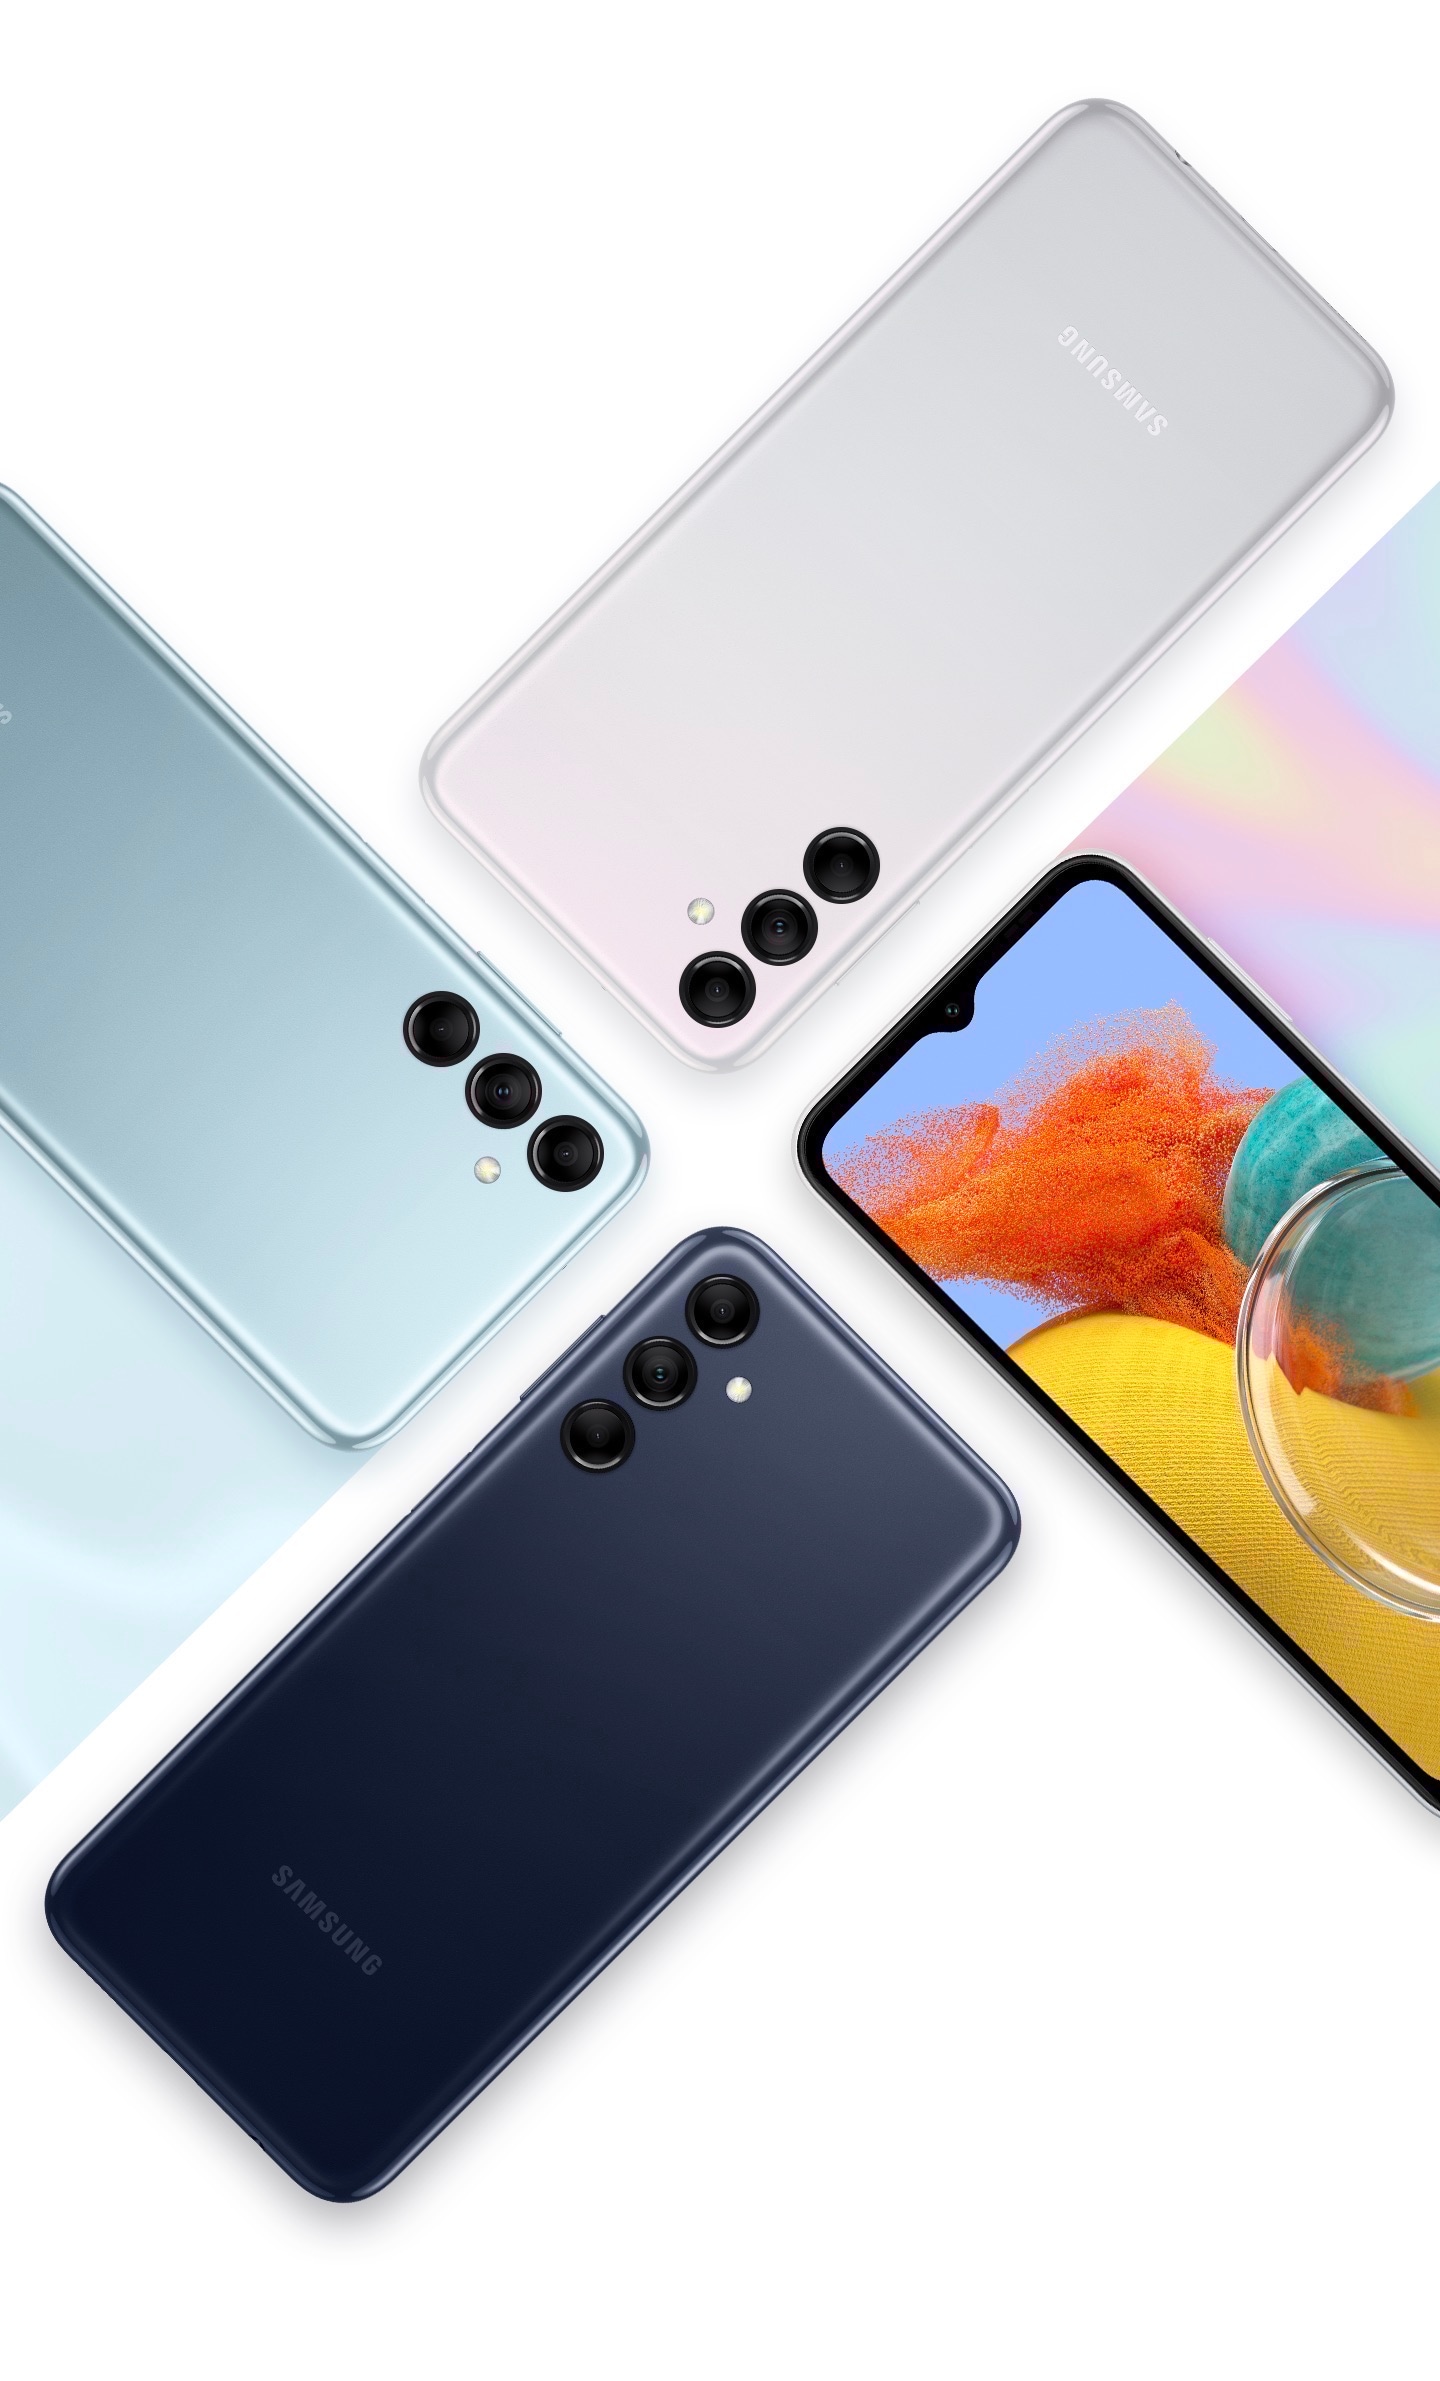 四部 Galaxy M14 5G 手機展示了正面螢幕，並以手機背面展示三款配色：冰雪藍、闇夜藍和星燦銀。